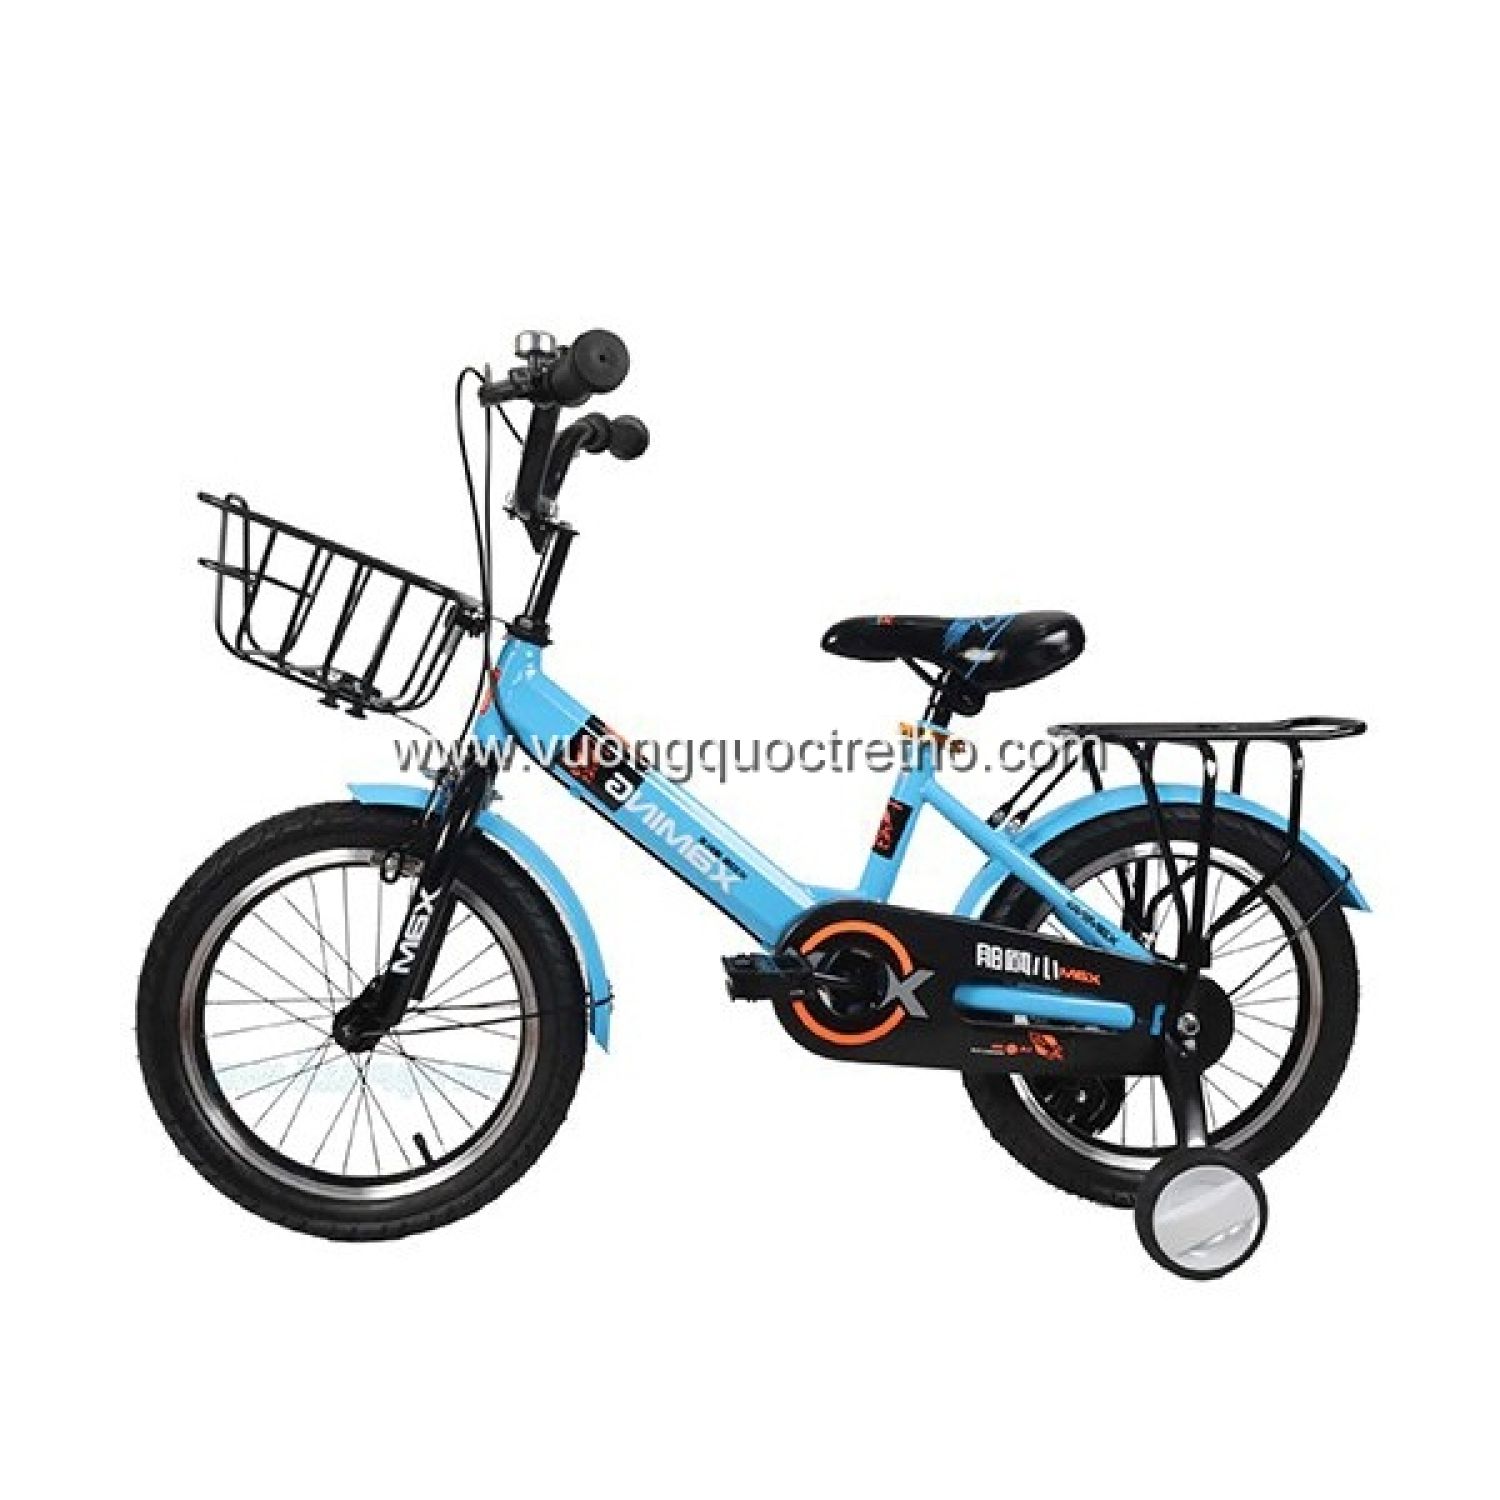 Xe đạp trẻ em cao cấp Xaming XAM05 vuongquoctretho